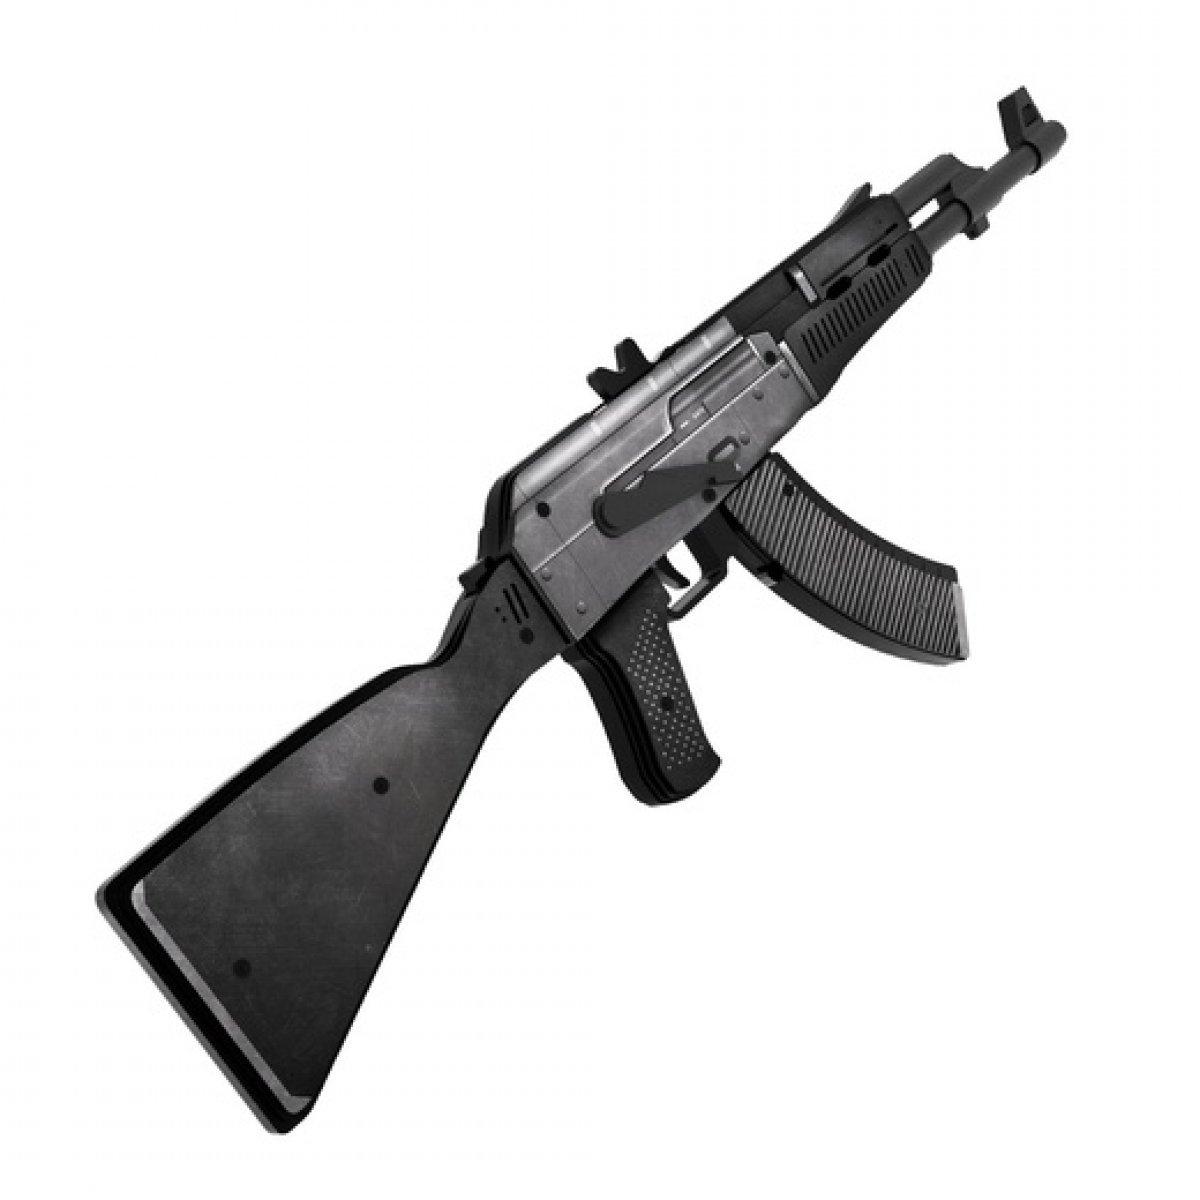 Деревянный автомат VozWooden Active АК-47 Сланец КС ГО / CS GO (резинкострел), фото 1